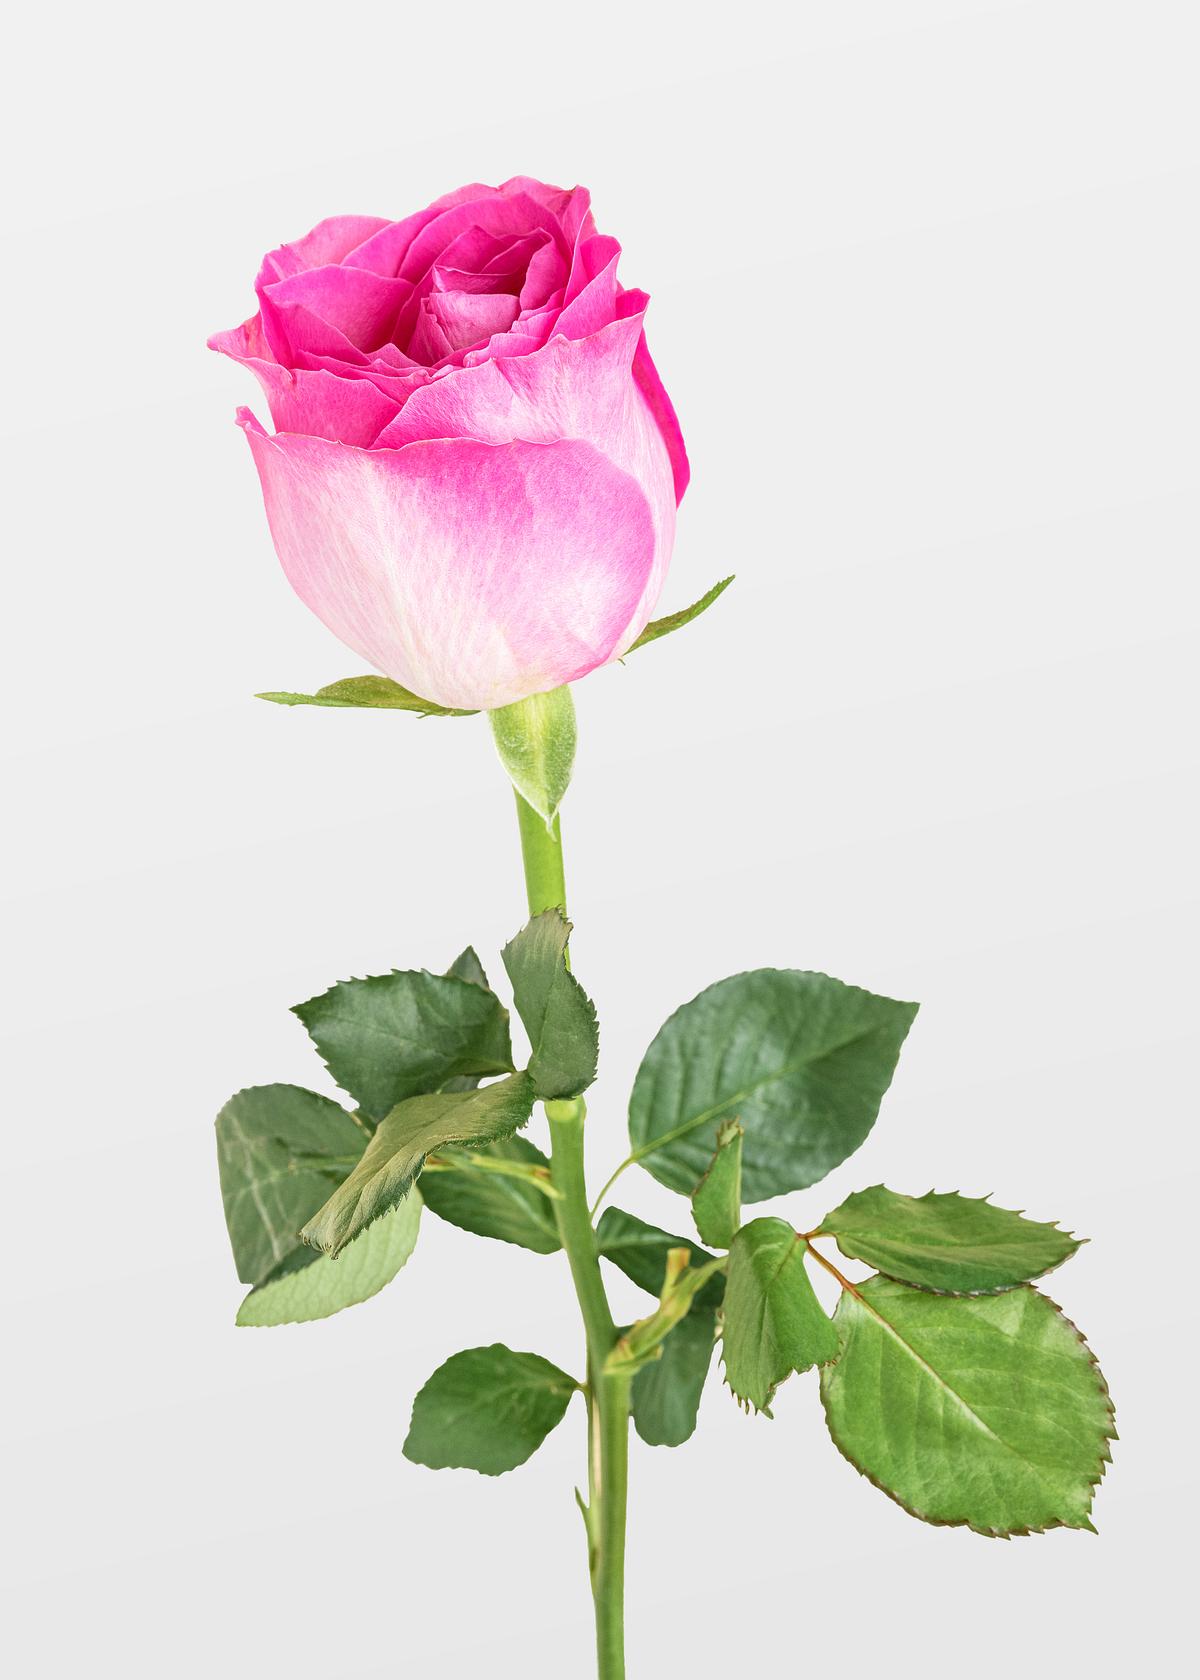 Blooming pink rose flower | Premium PSD - rawpixel